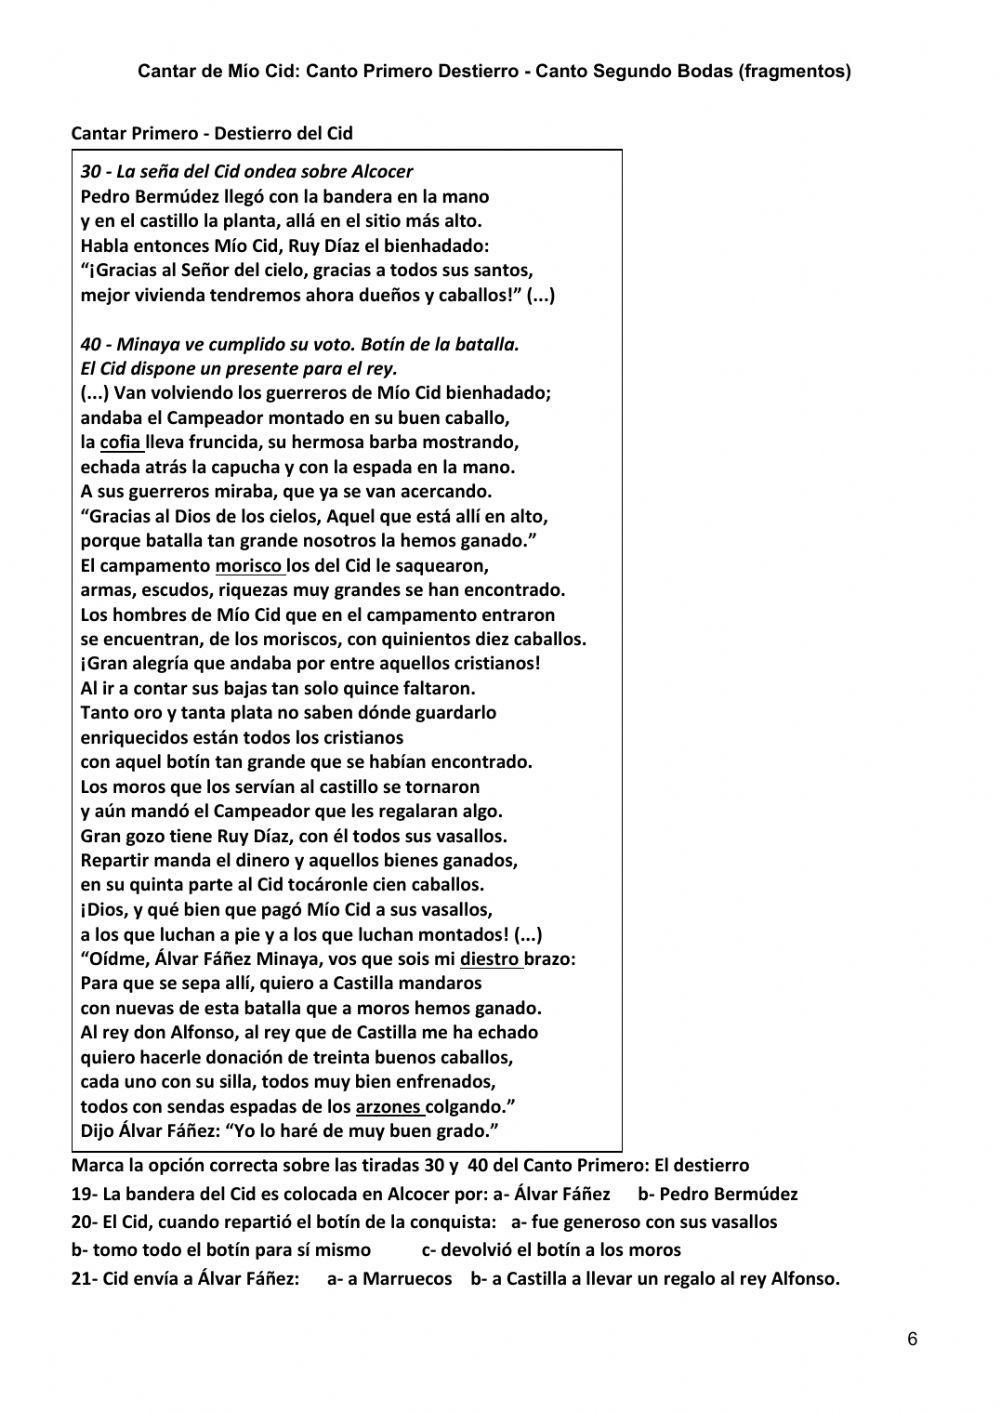 Cantar de Mío Cid - Canto Primero y Segundo (frag)